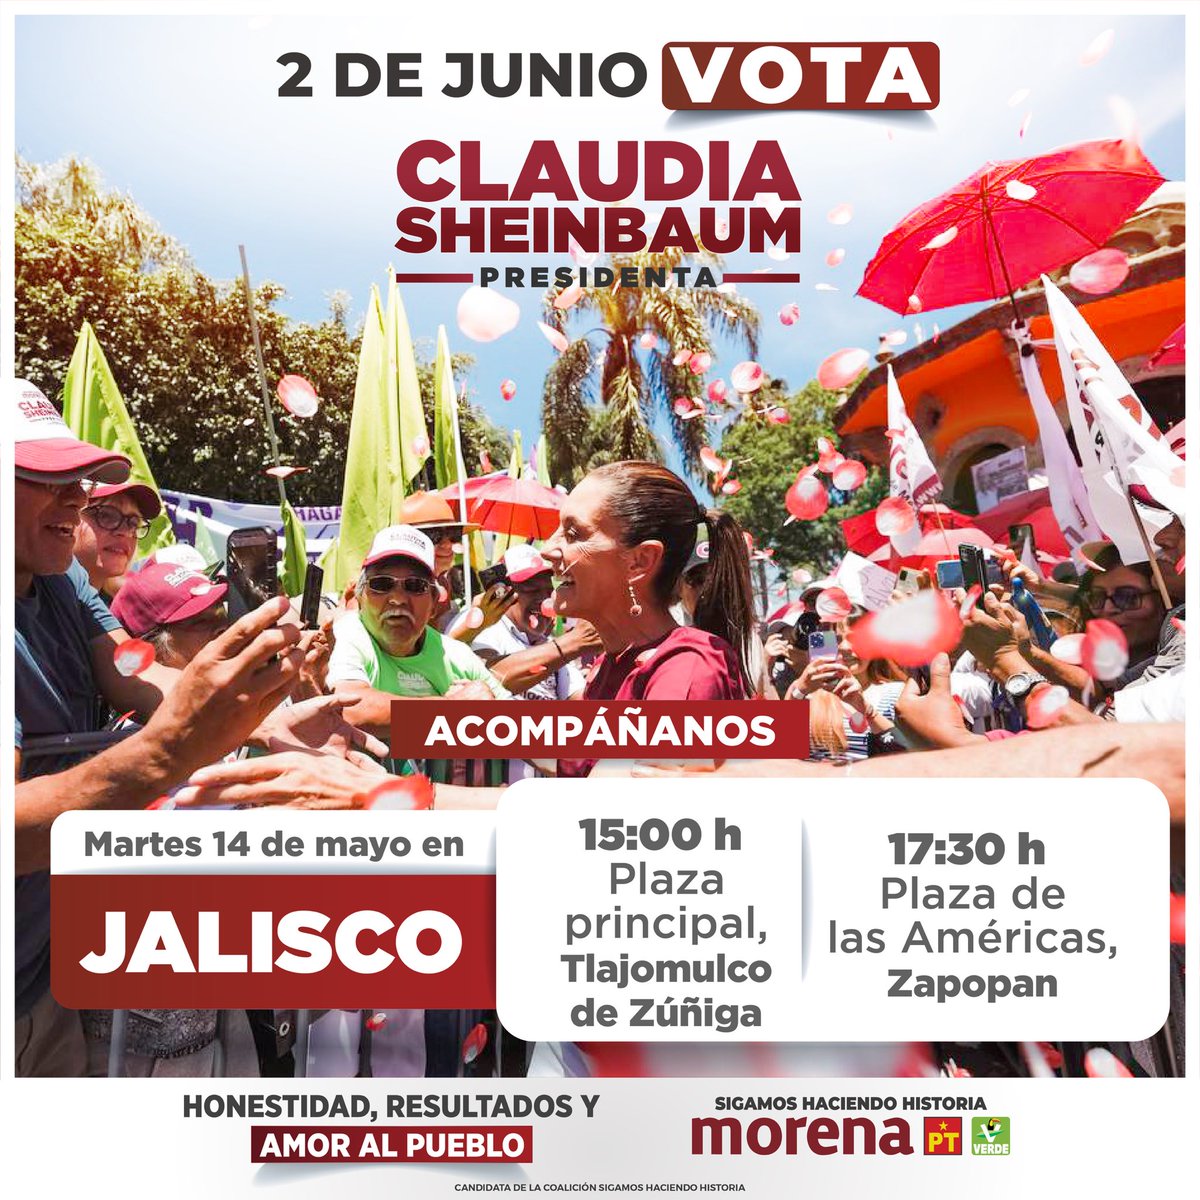 La alegría y la esperanza se contagiarán en Jalisco con la visita de nuestra próxima presidenta, @claudiashein. Acompañémosla hoy a partir de las 15 hrs.